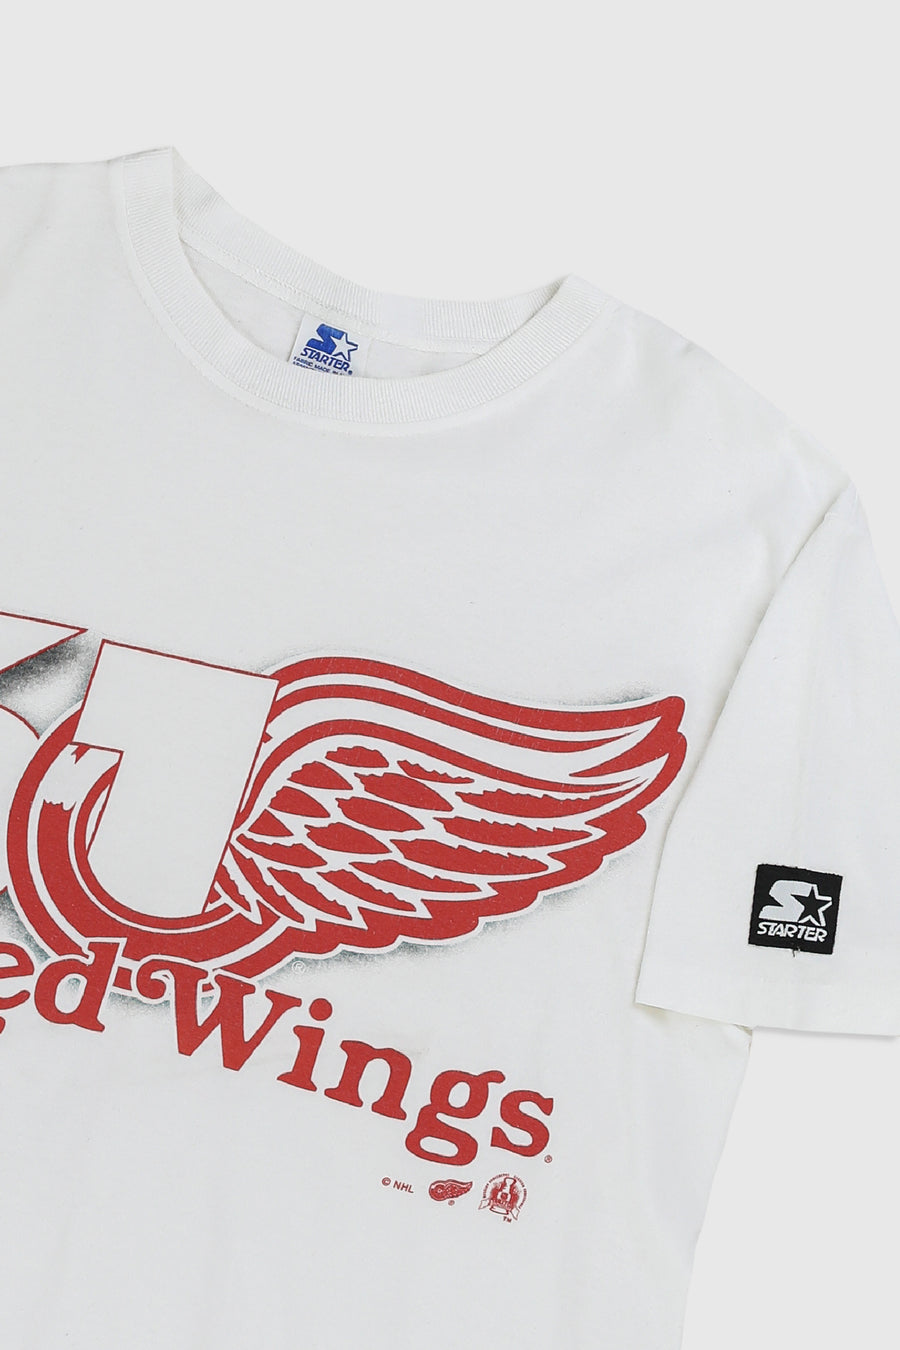 Vintage Red Wings NHL Starter Tee